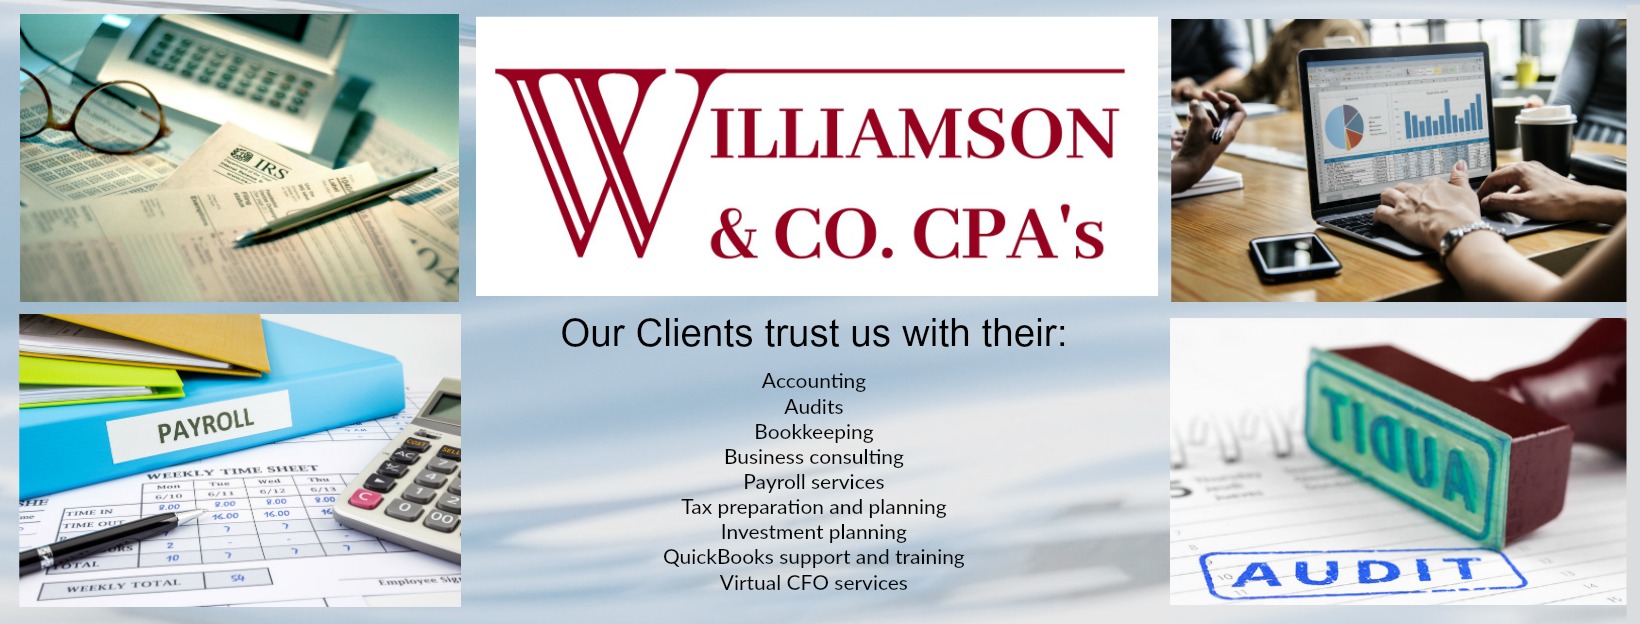 Williamson & Co. CPAs